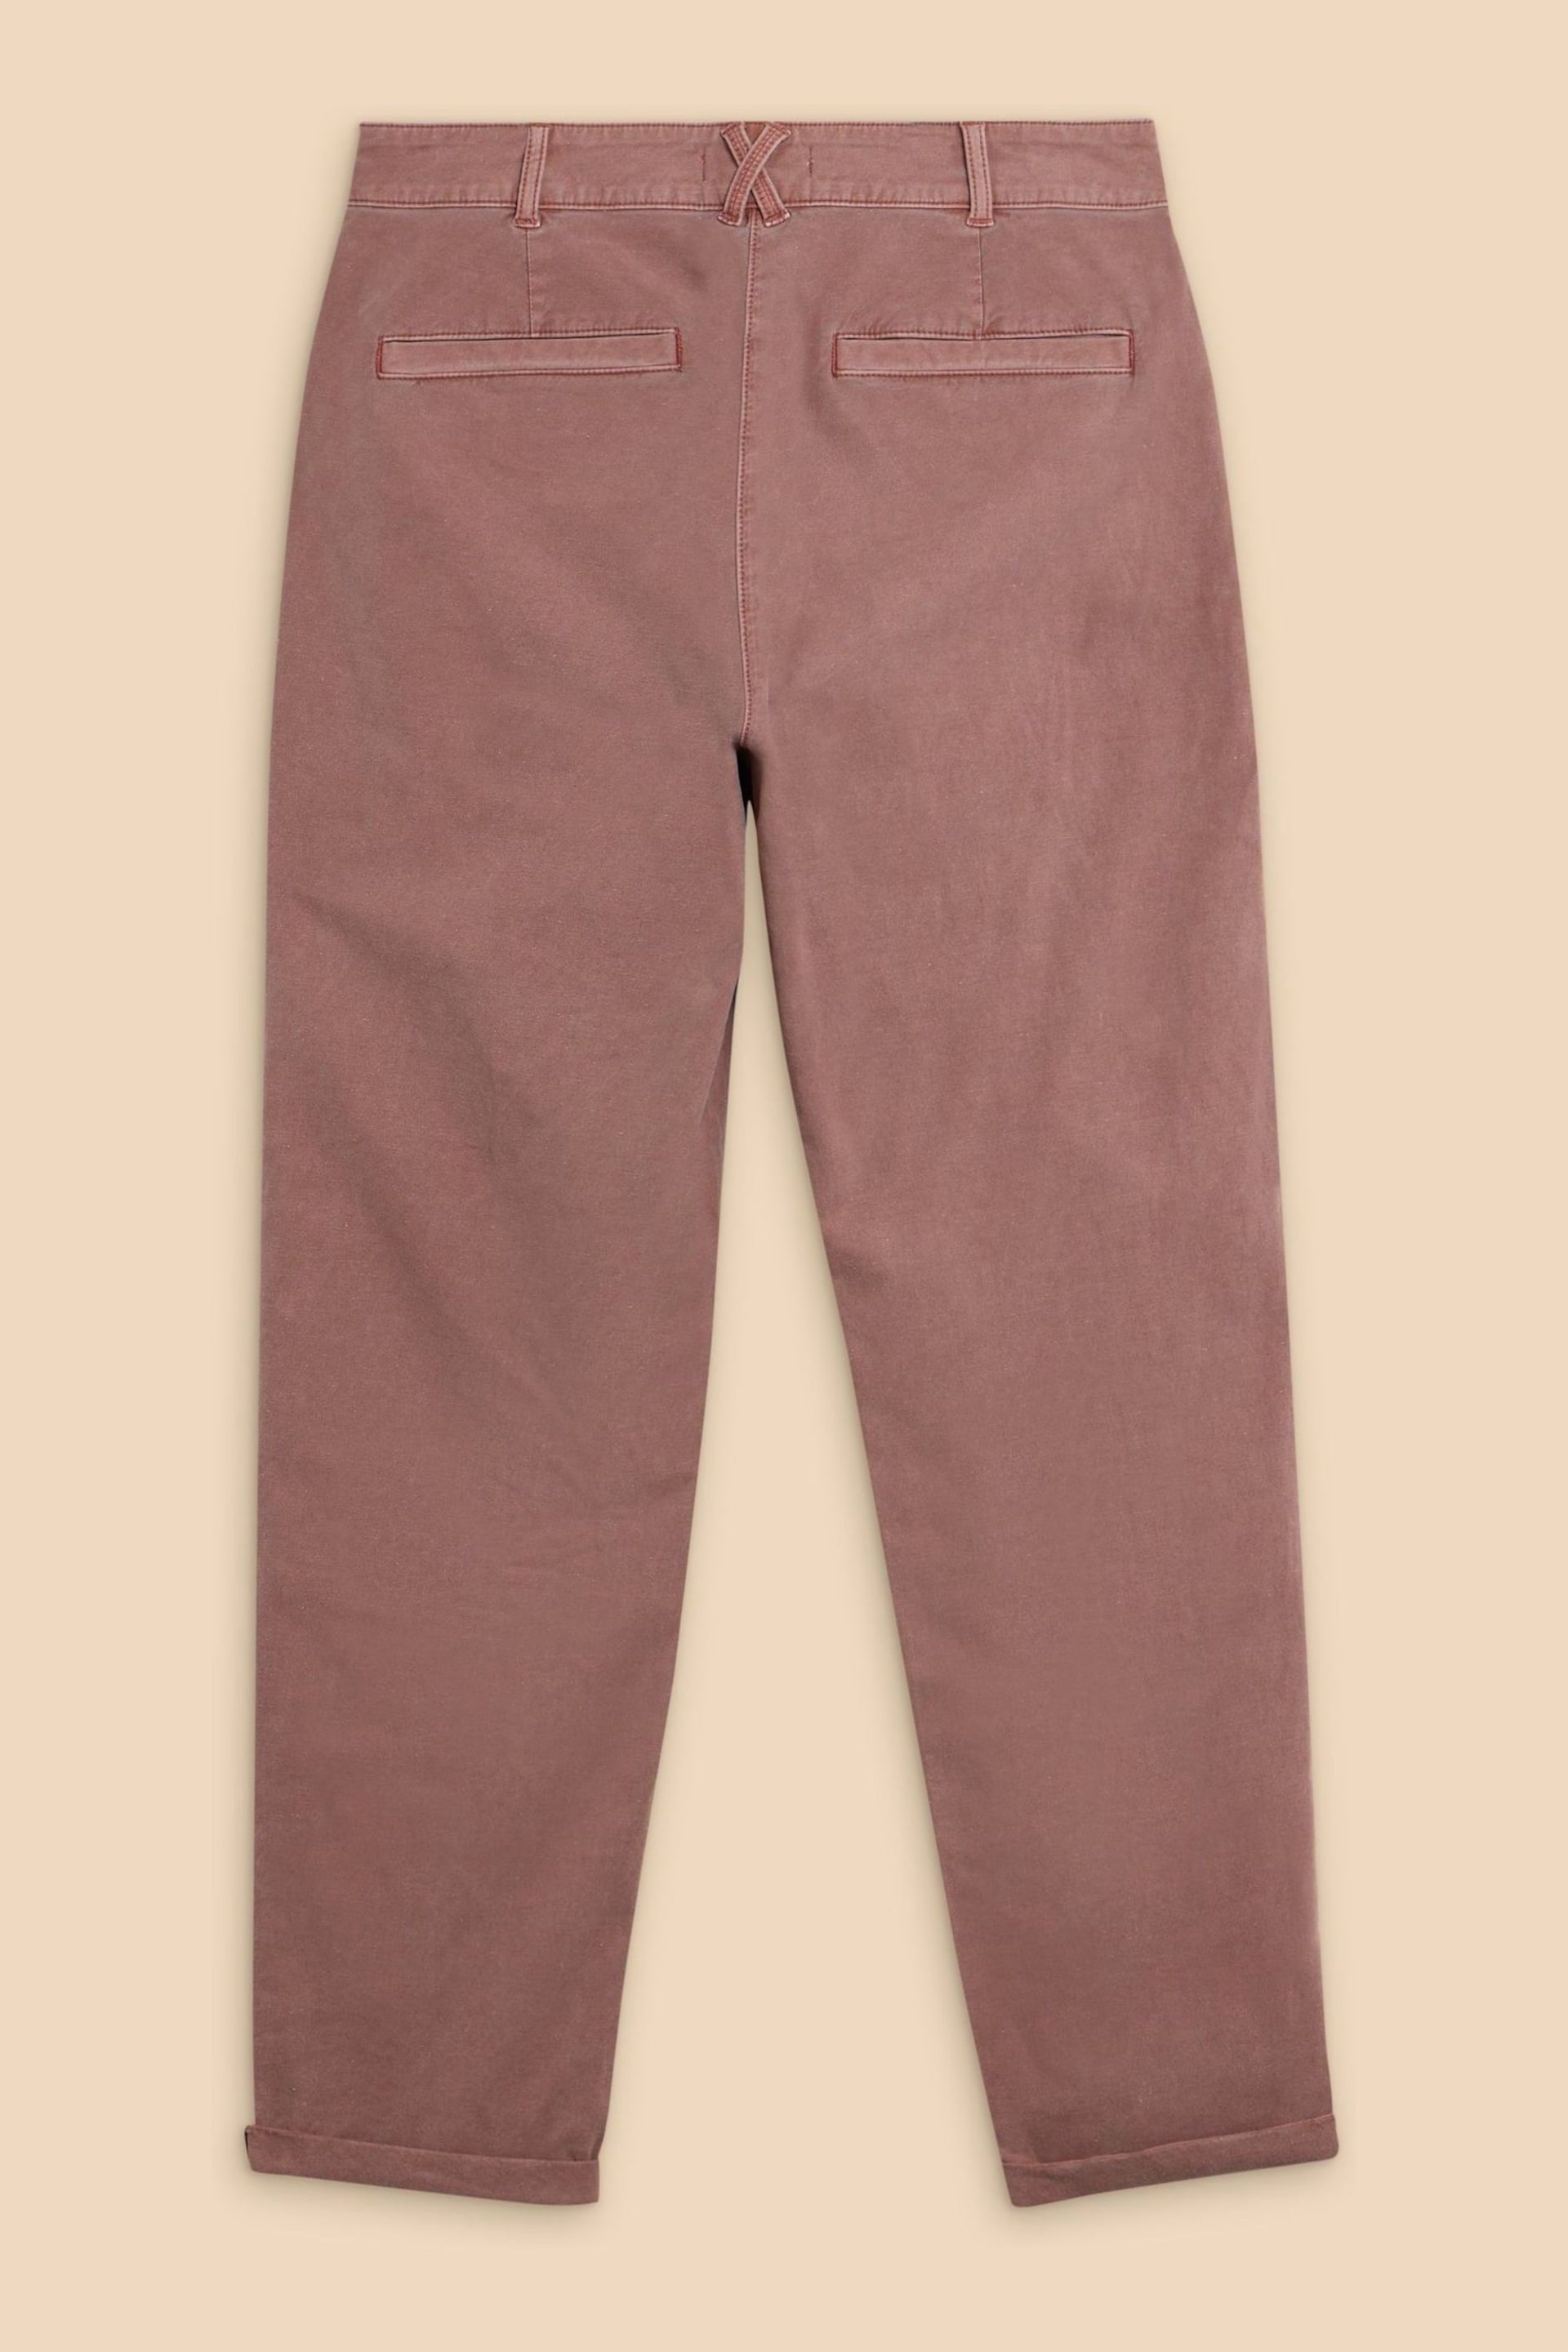 White Stuff Pink Petite Twister Chino Trousers - Image 6 of 7